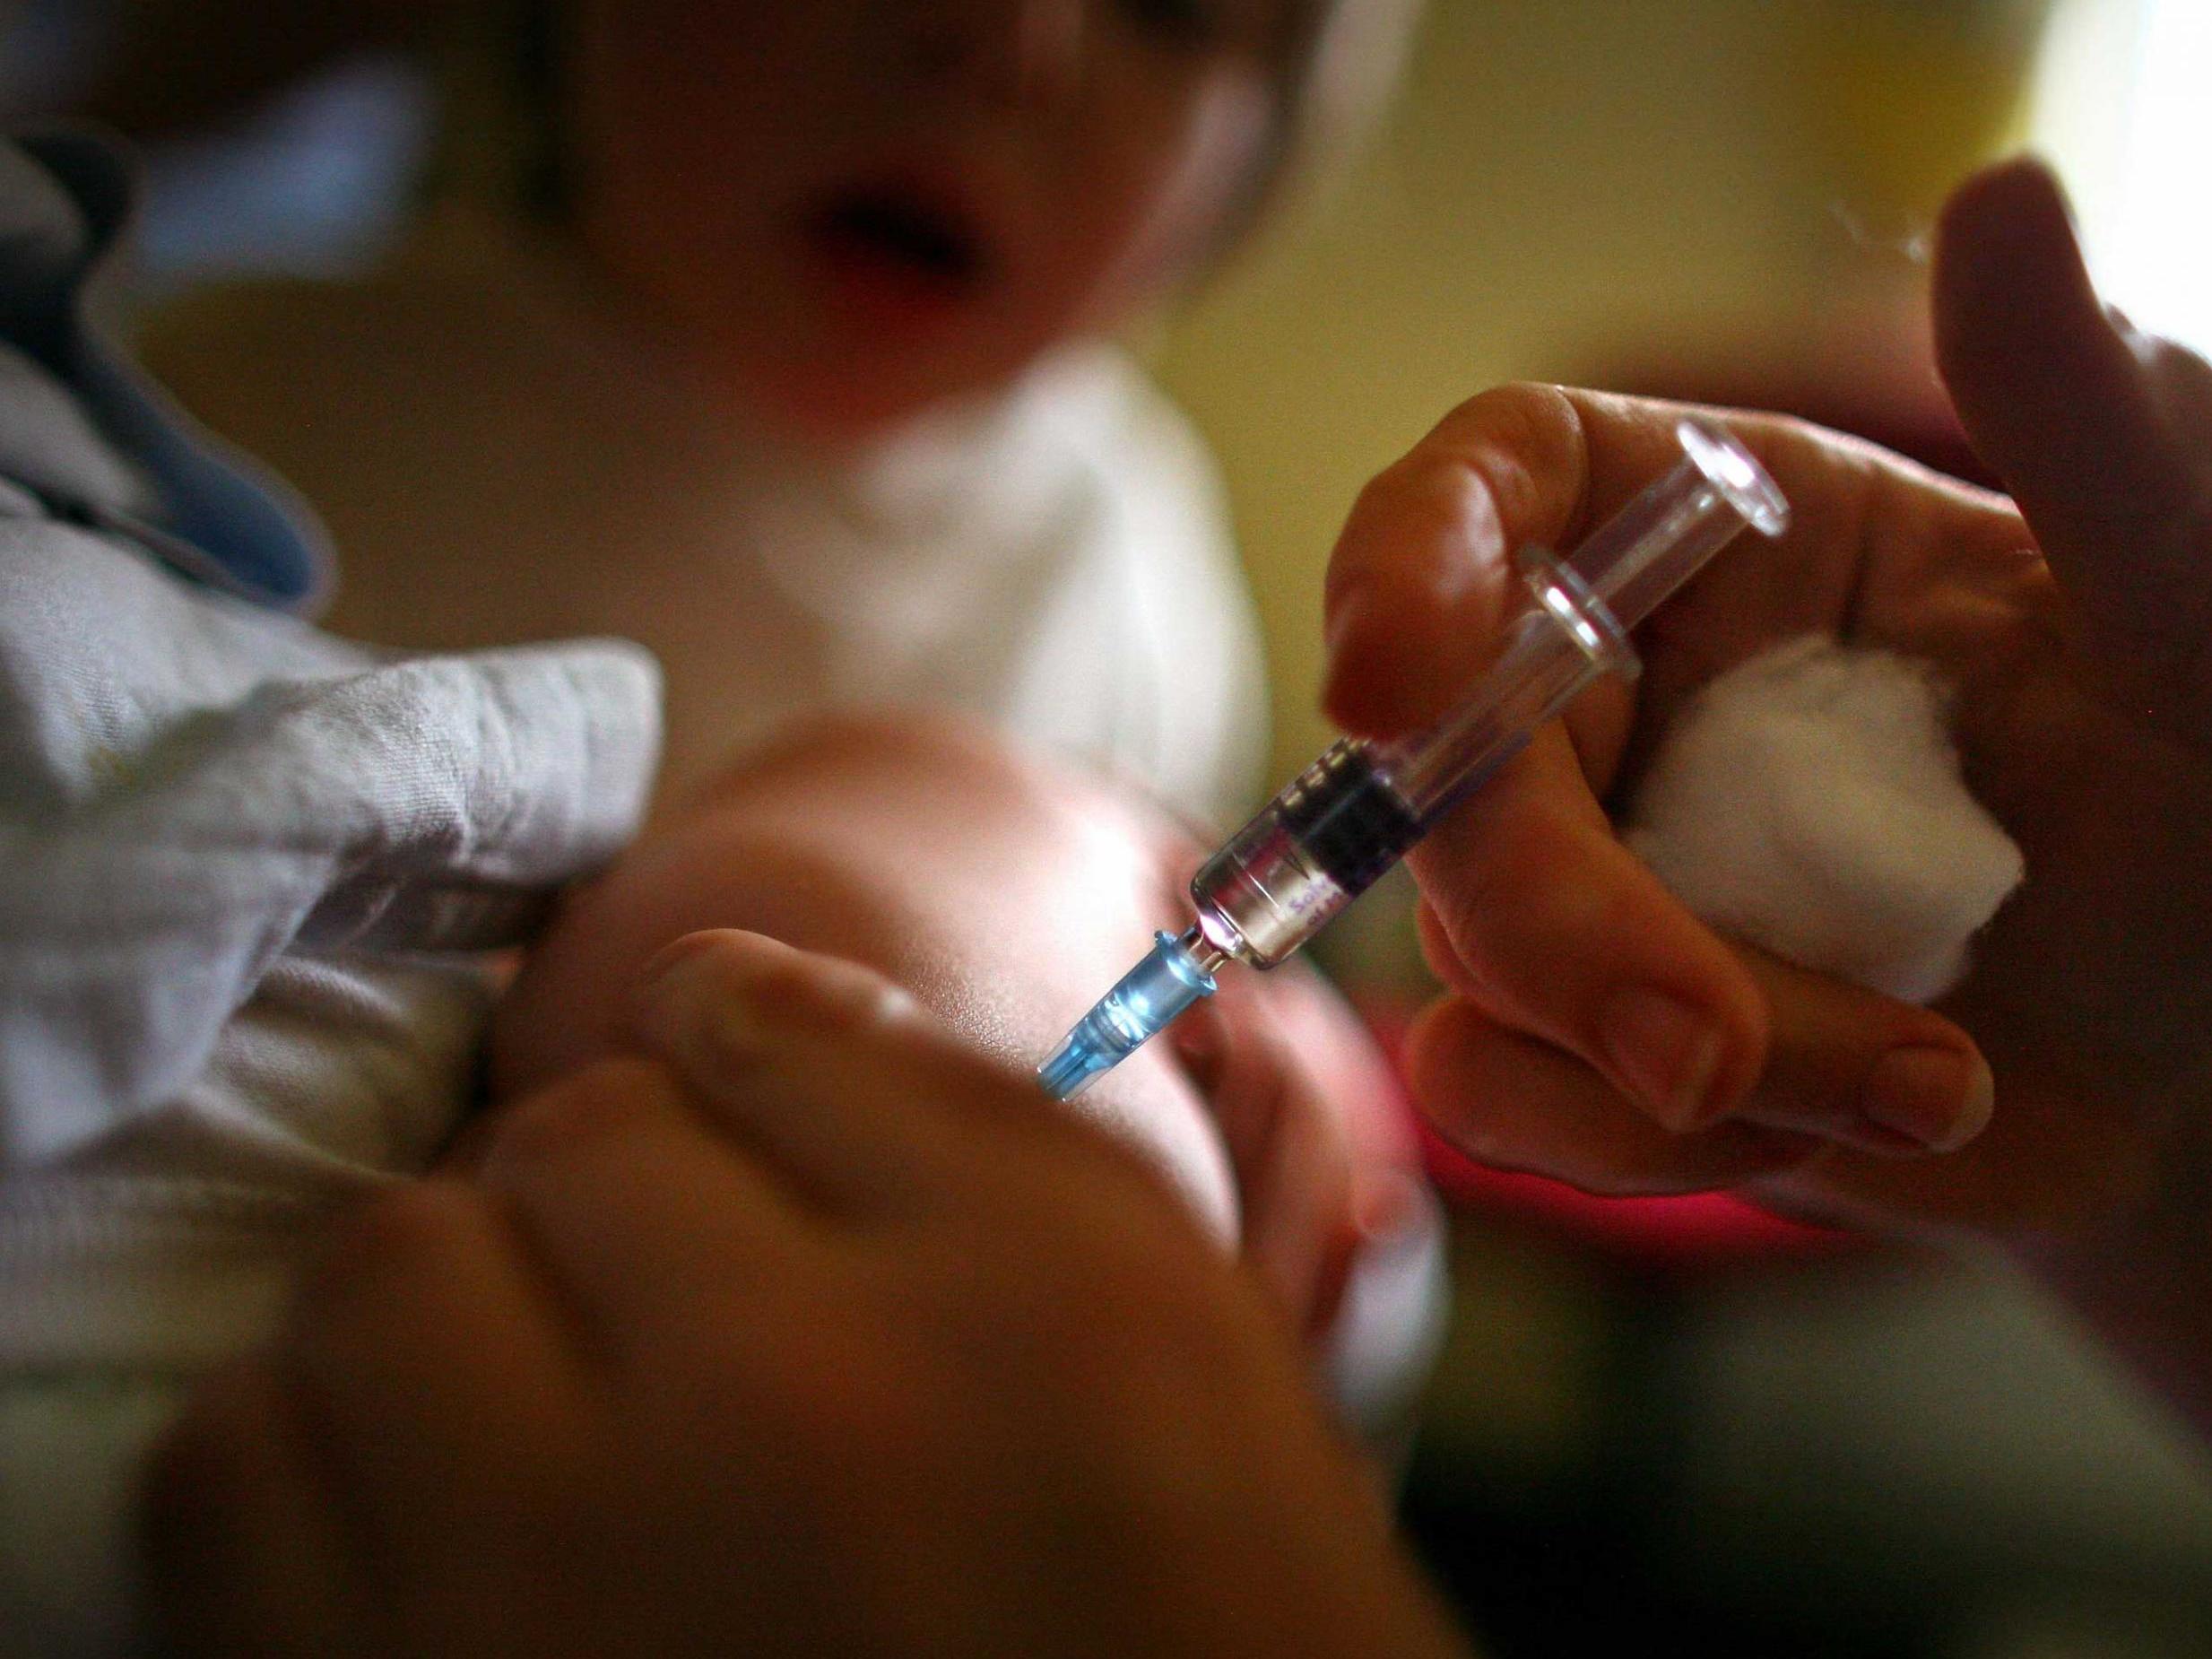 A young boy receives an immunisation jab